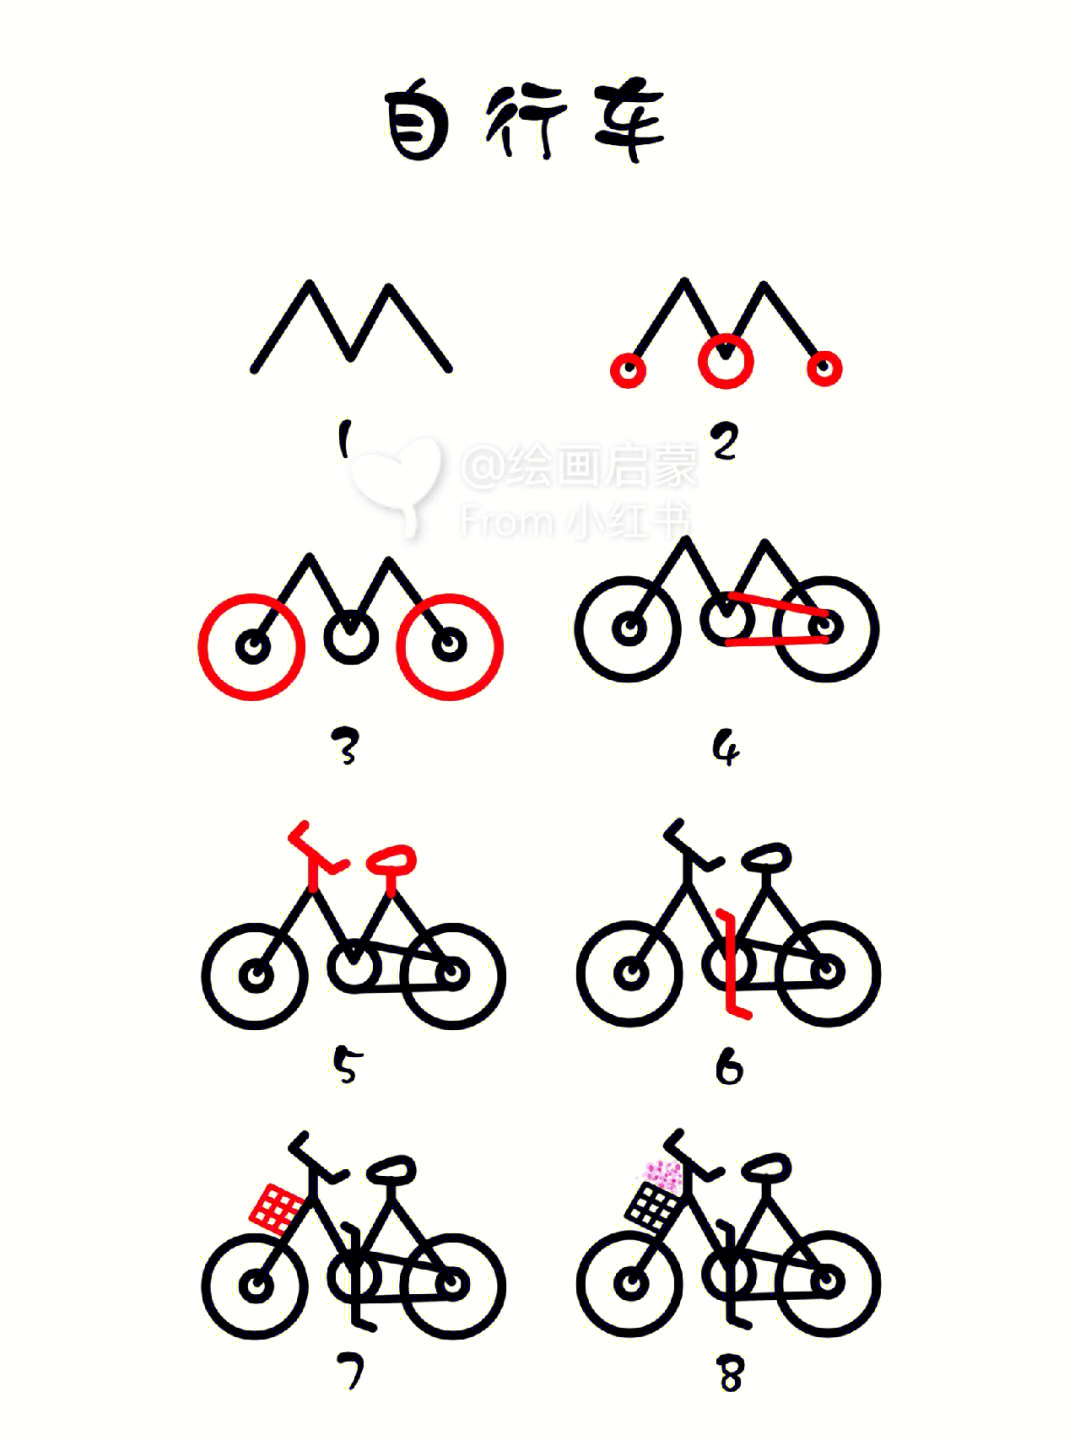 自行车的简笔画彩色图片